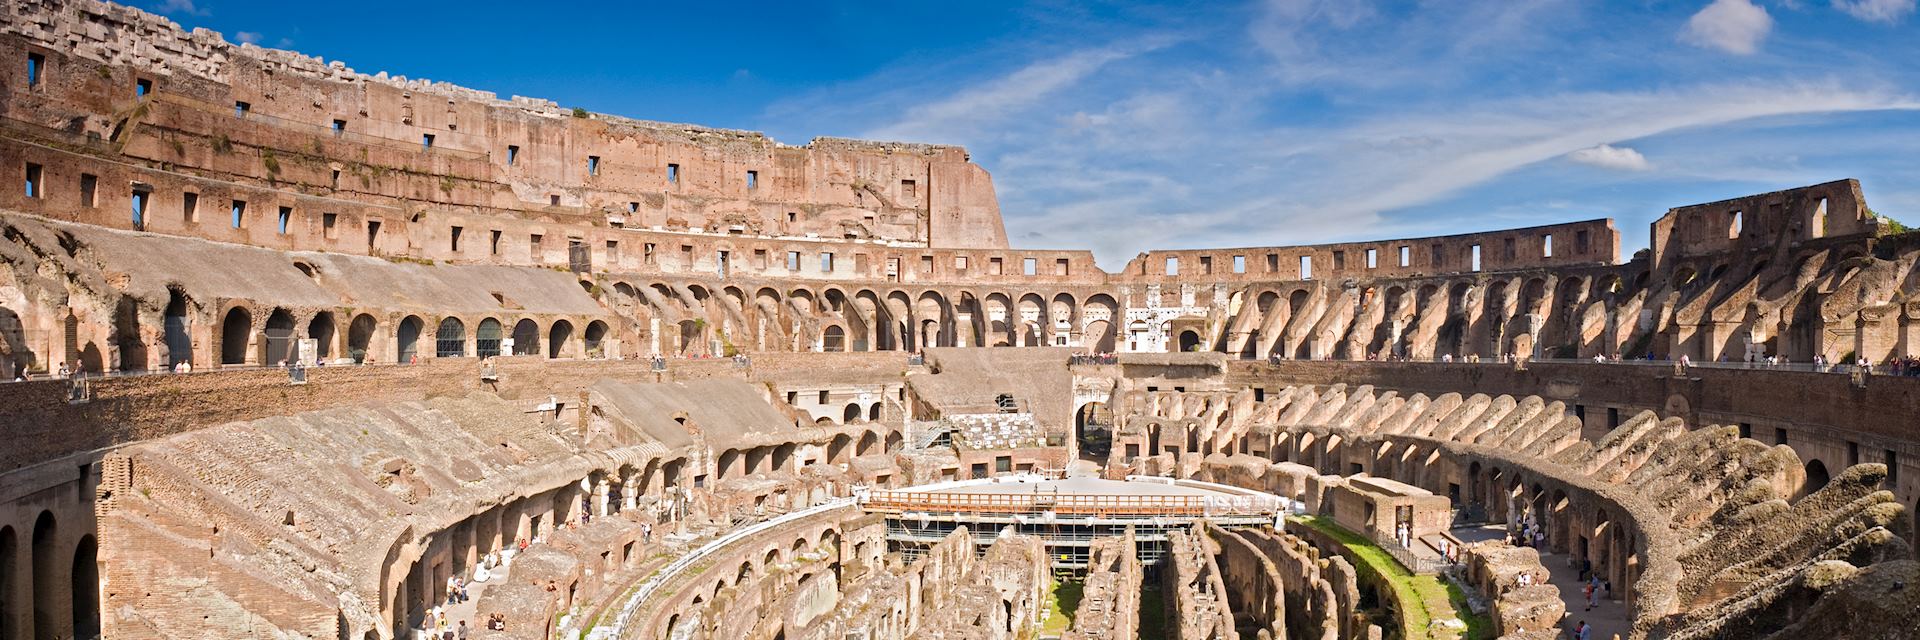 Amphitheatre of the Colosseum, Rome